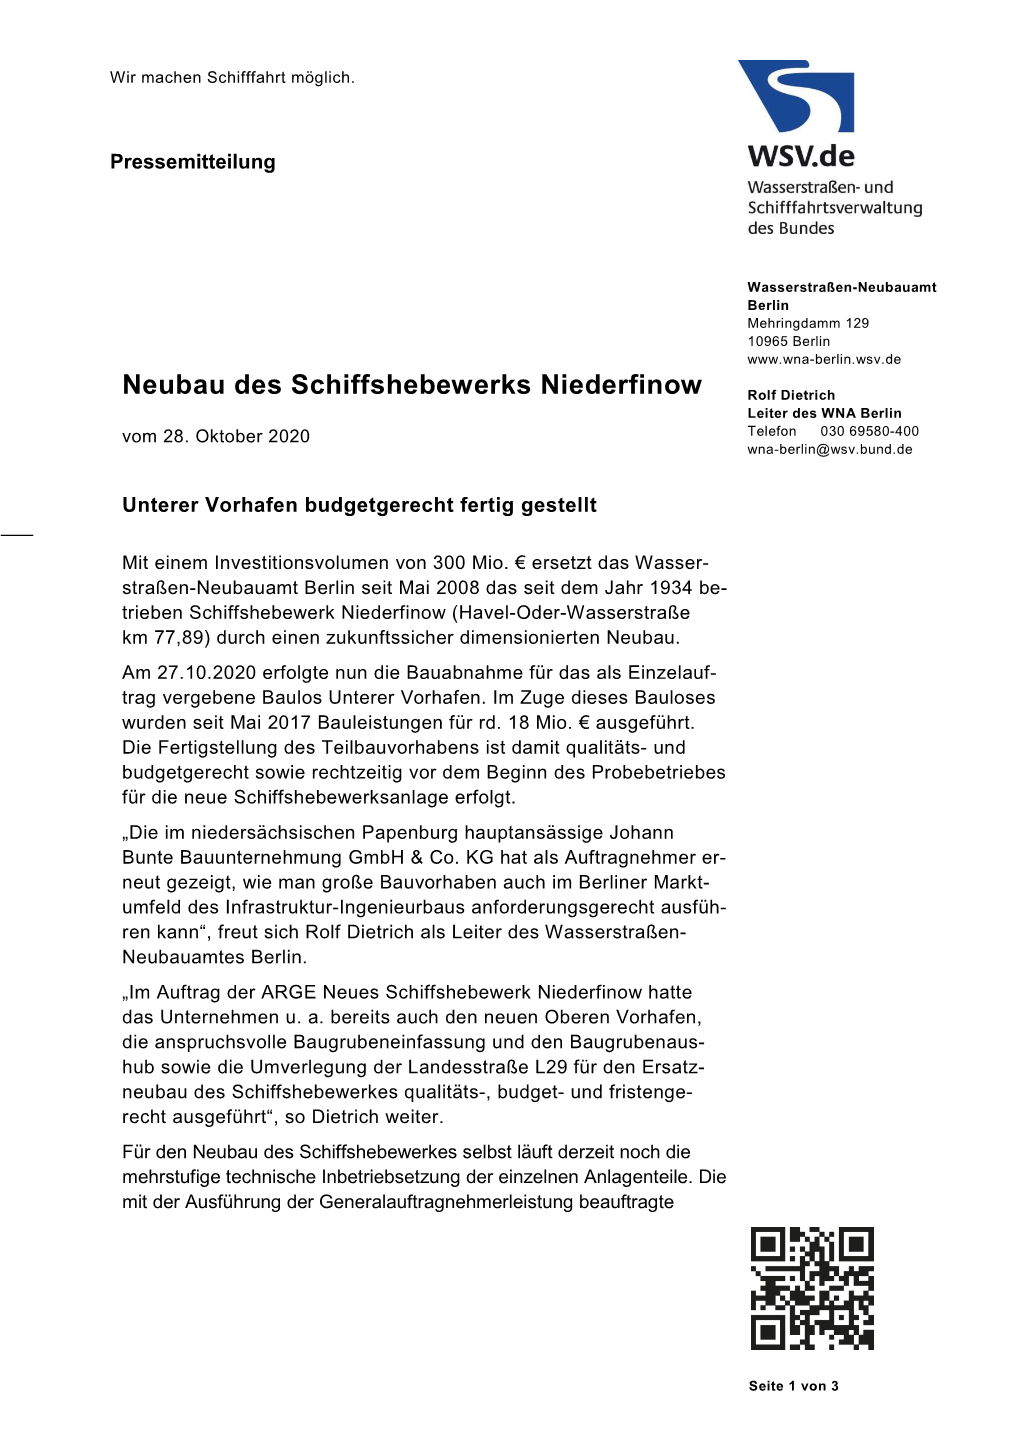 "Neubau Des Schiffshebewerkes Niederfinow, Unterer Vorhafen